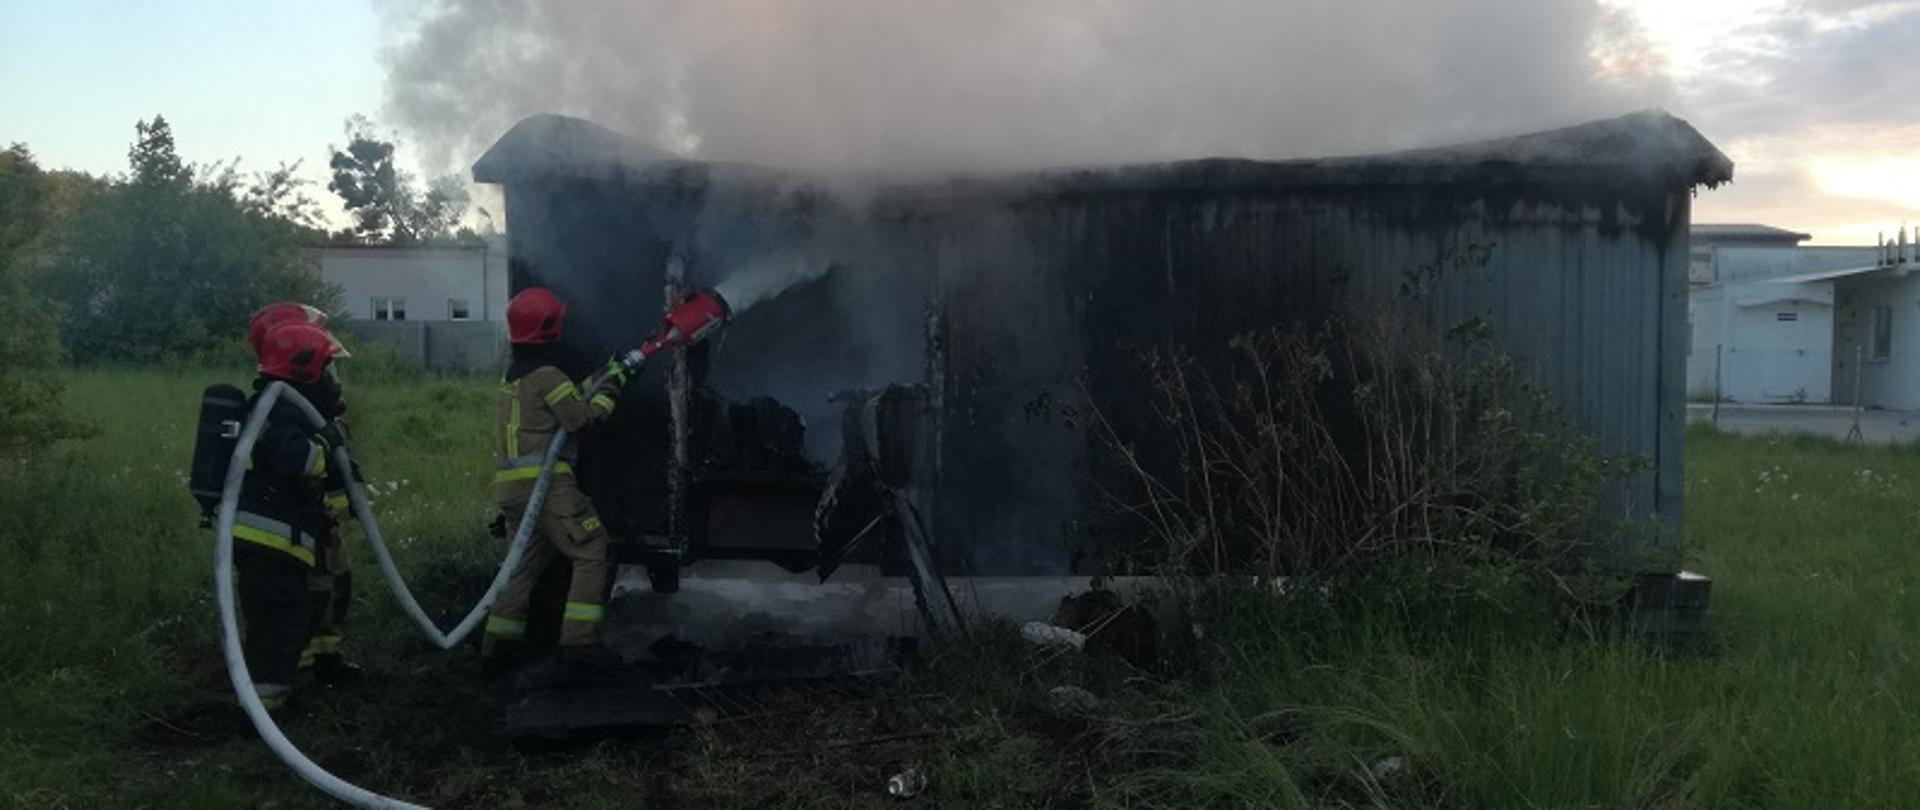 Zdjęcie przedstawia pożar wolnostojącego baraku na ul. Chocimskiej w Białogardzie. Strażacy w ubraniach specjalnych gaszą obiekt piana gaśniczą. Zastęp trzyma wąż pożarniczy zakończony wytwornicą pianową